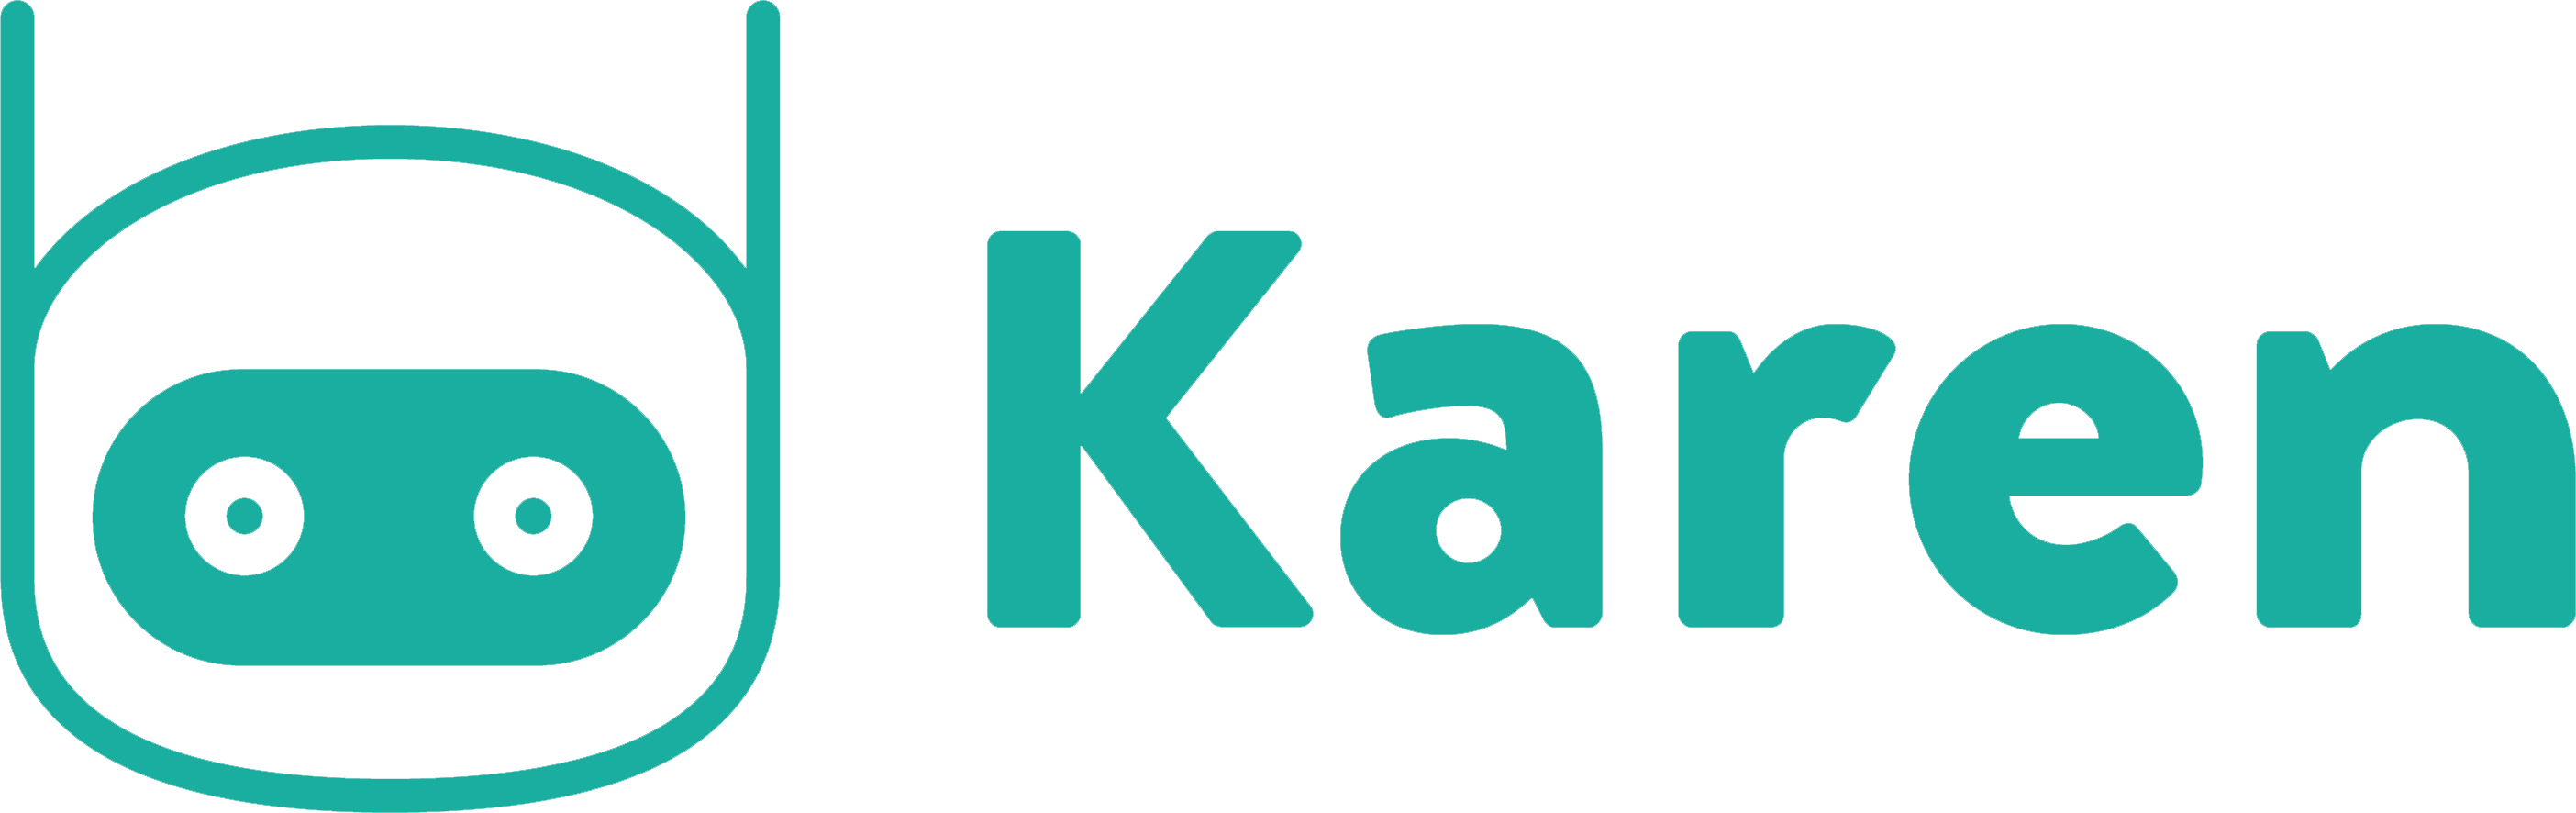 Karen-logo